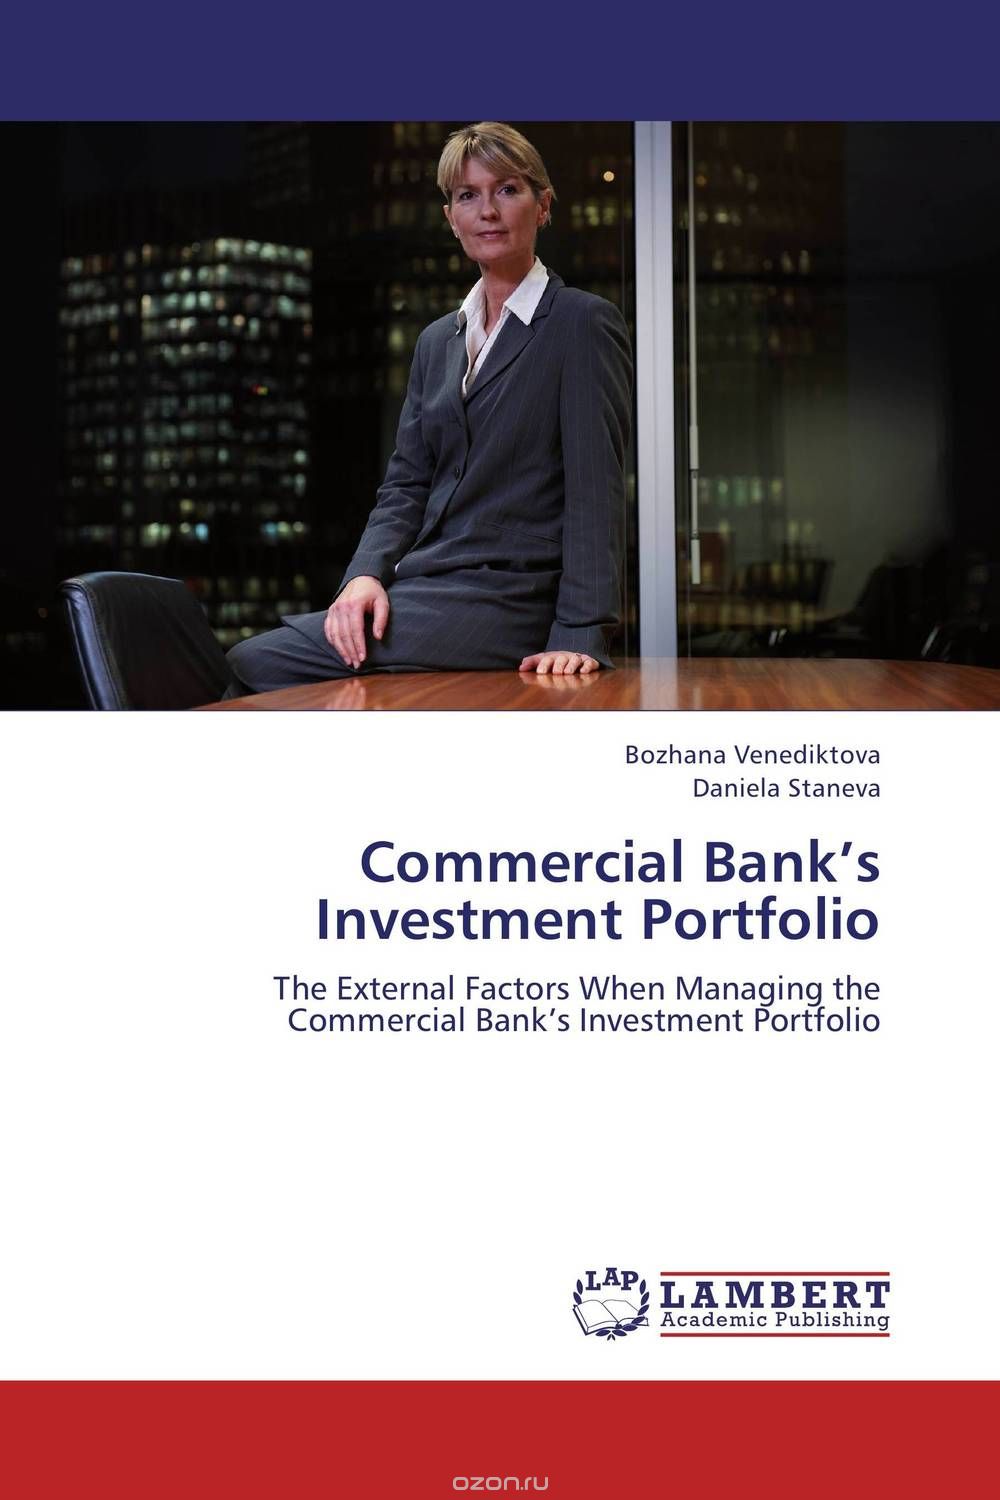 Скачать книгу "Commercial Bank’s Investment Portfolio"